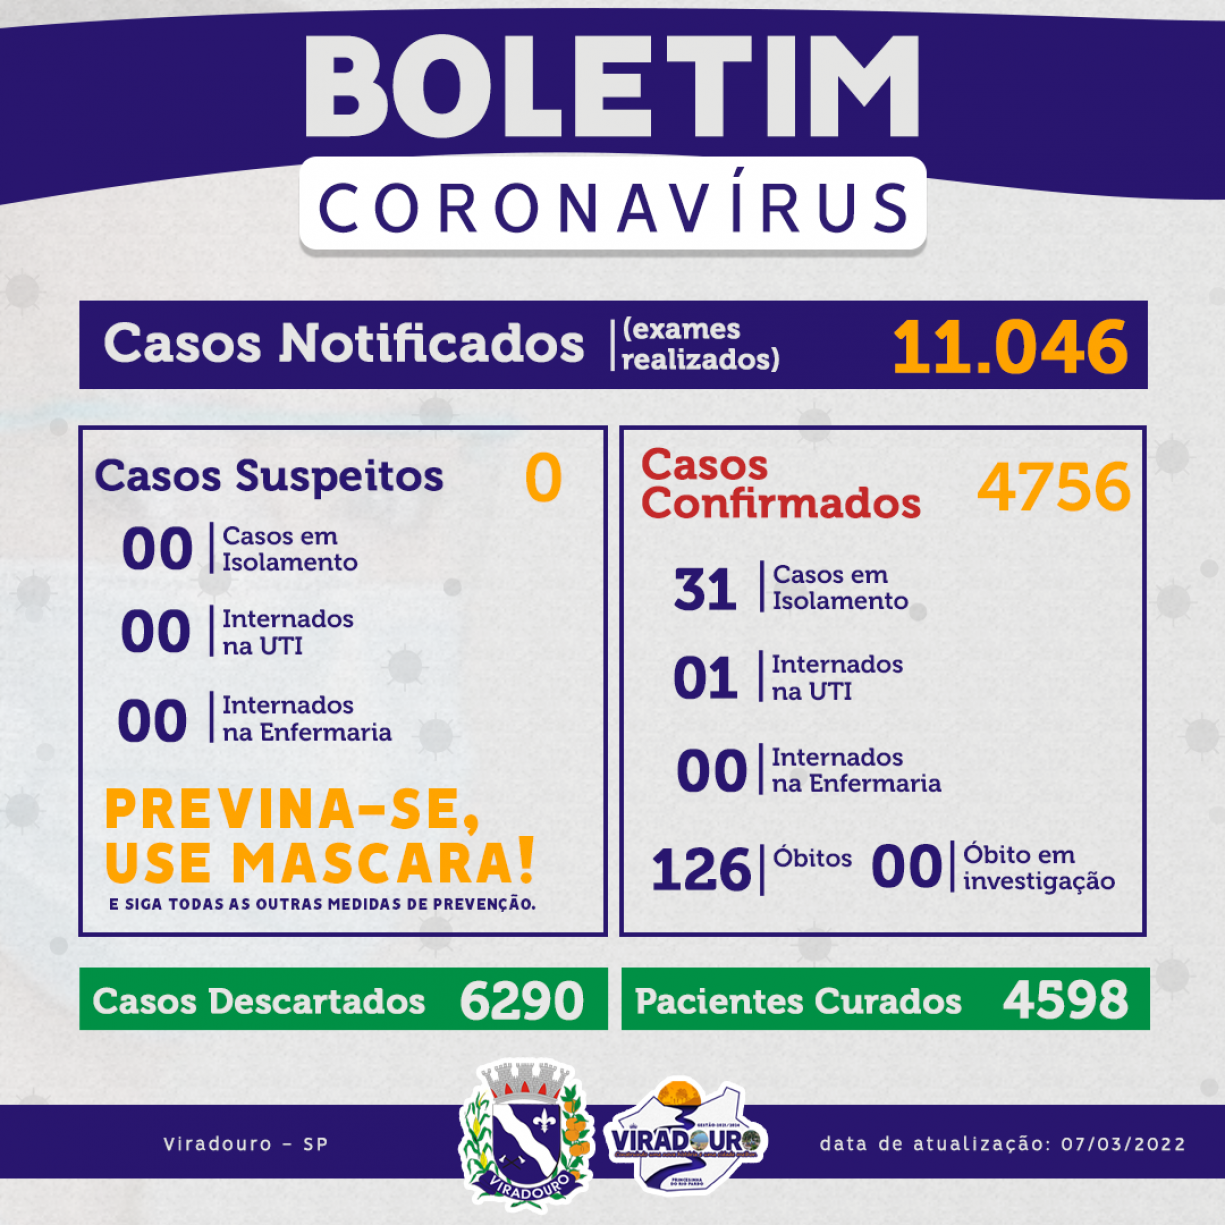 	CORONAVÍRUS: BOLETIM EPIDEMIOLÓGICO (ATUALIZAÇÃO 07/03/2022)